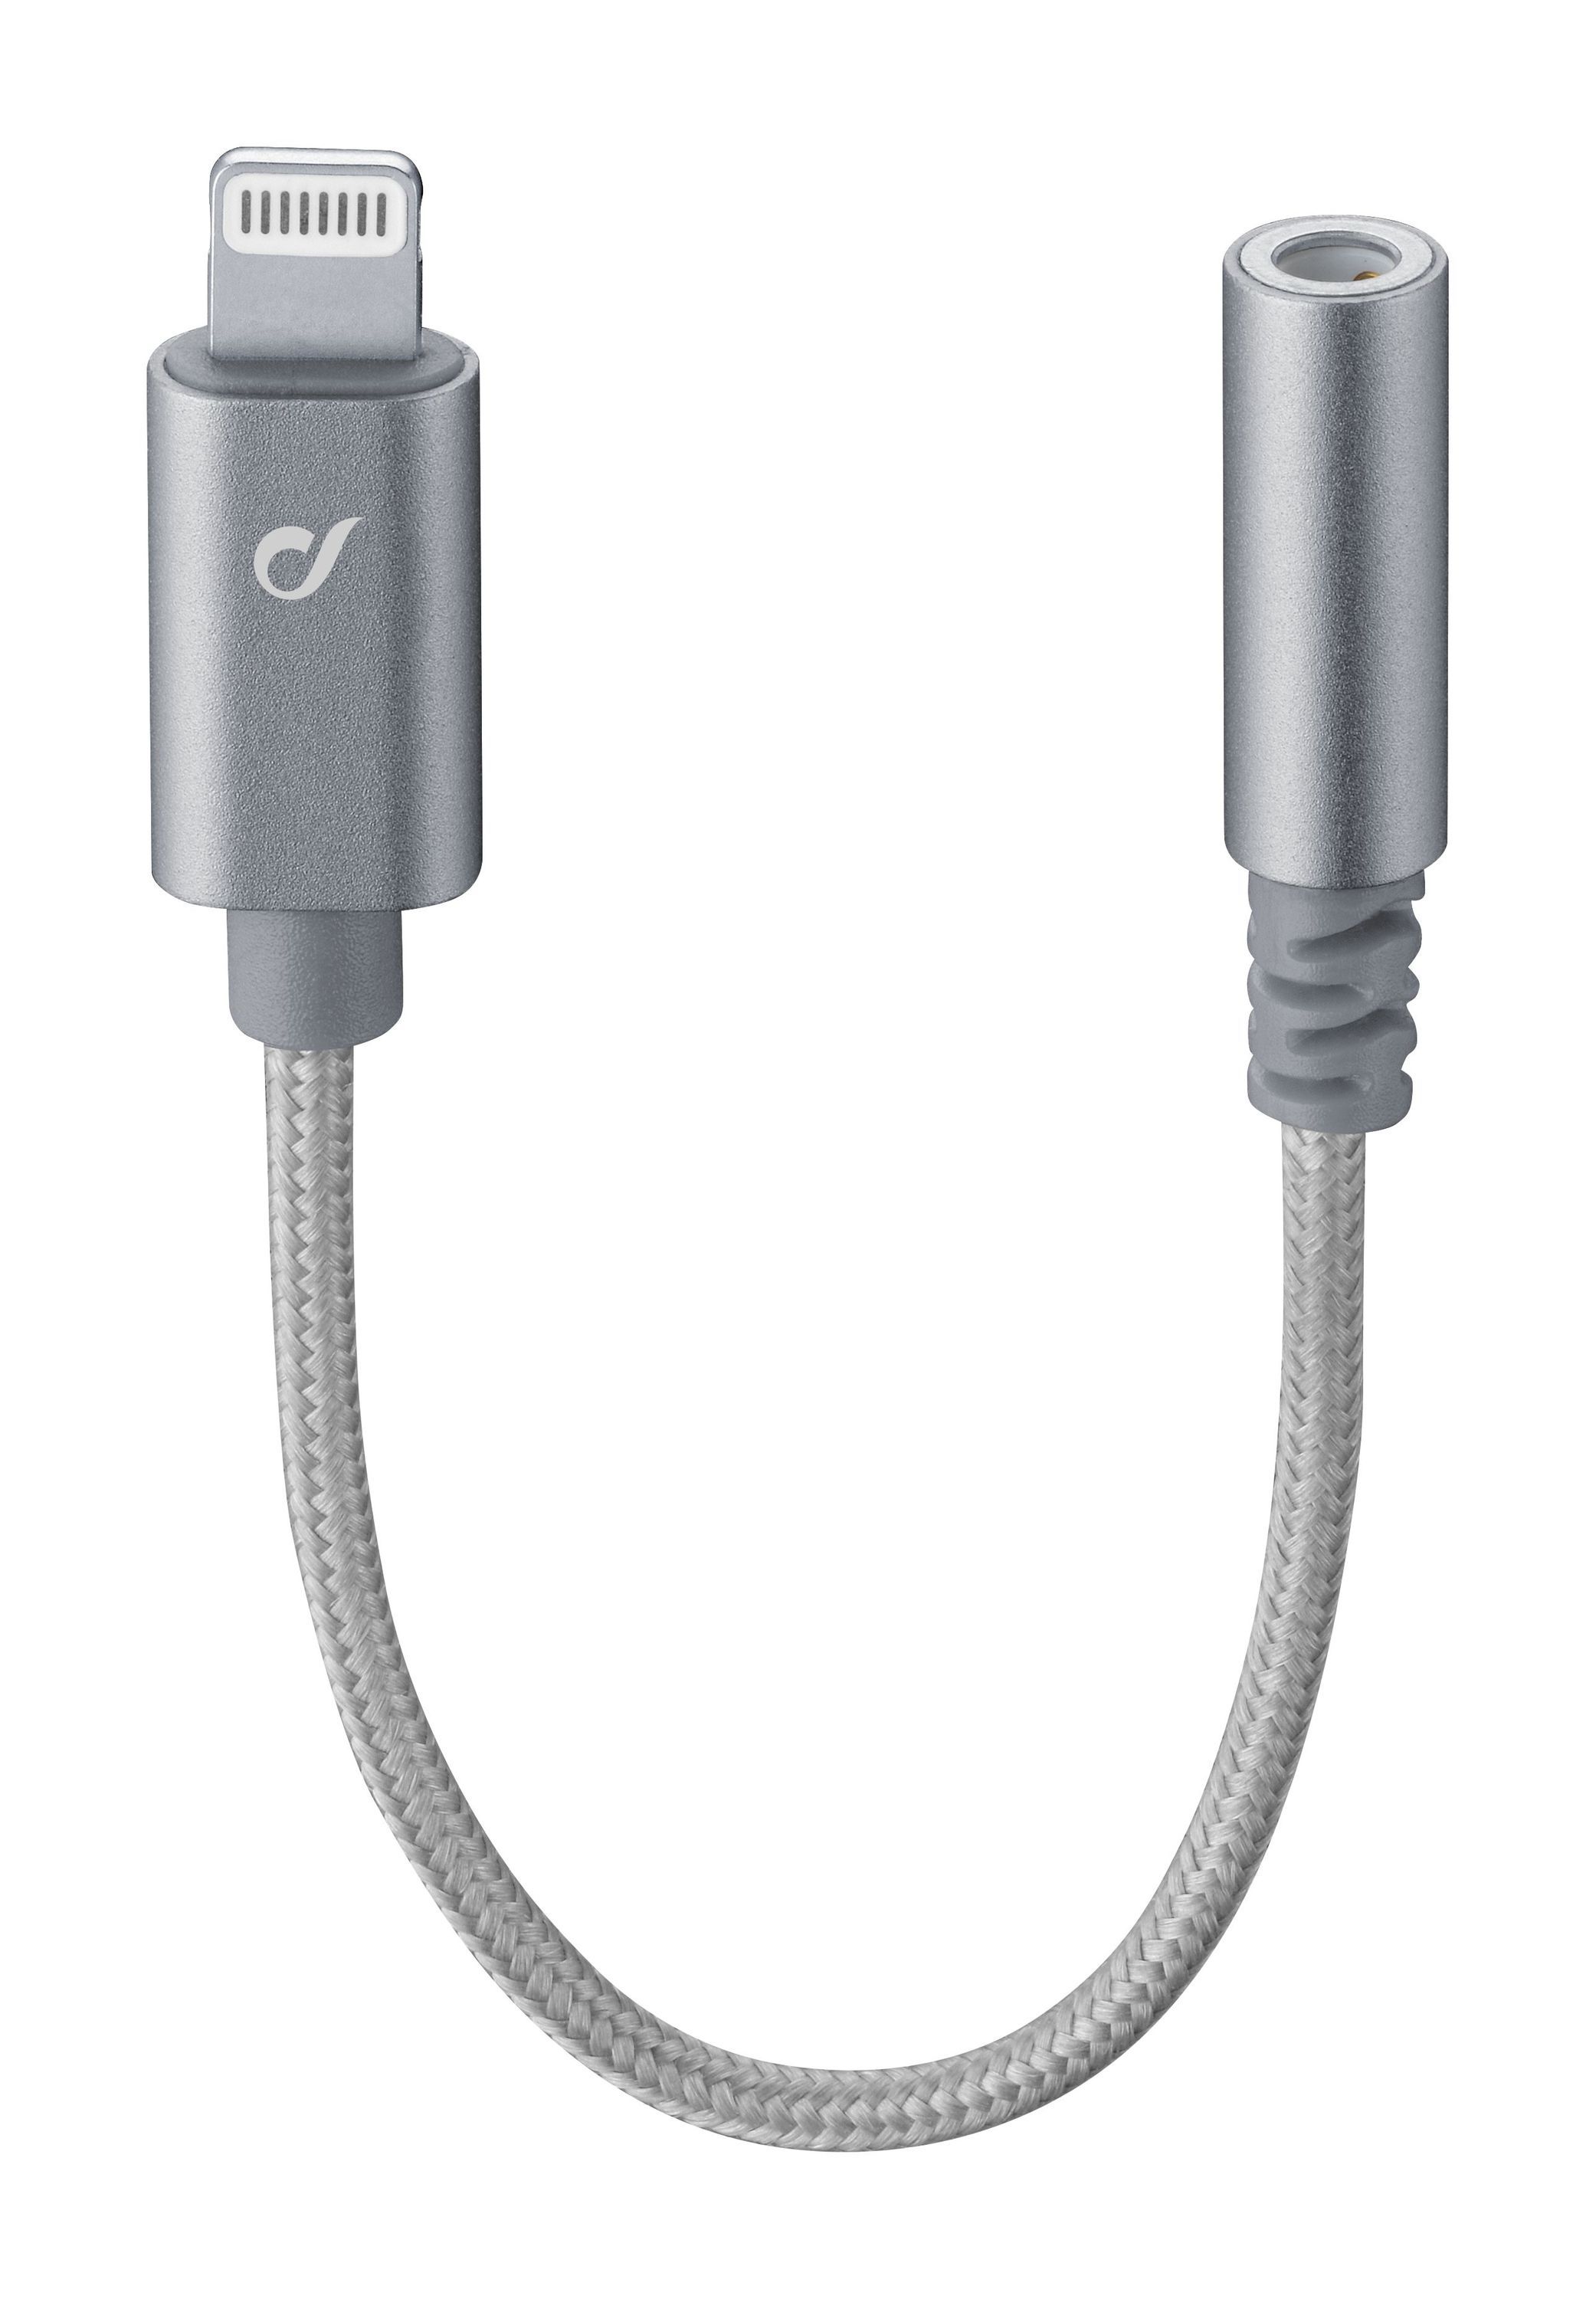 Extra odolný adaptér Music Enabler z konektoru Lightning na 3,5 mm jack, MFI certifikace, šedý